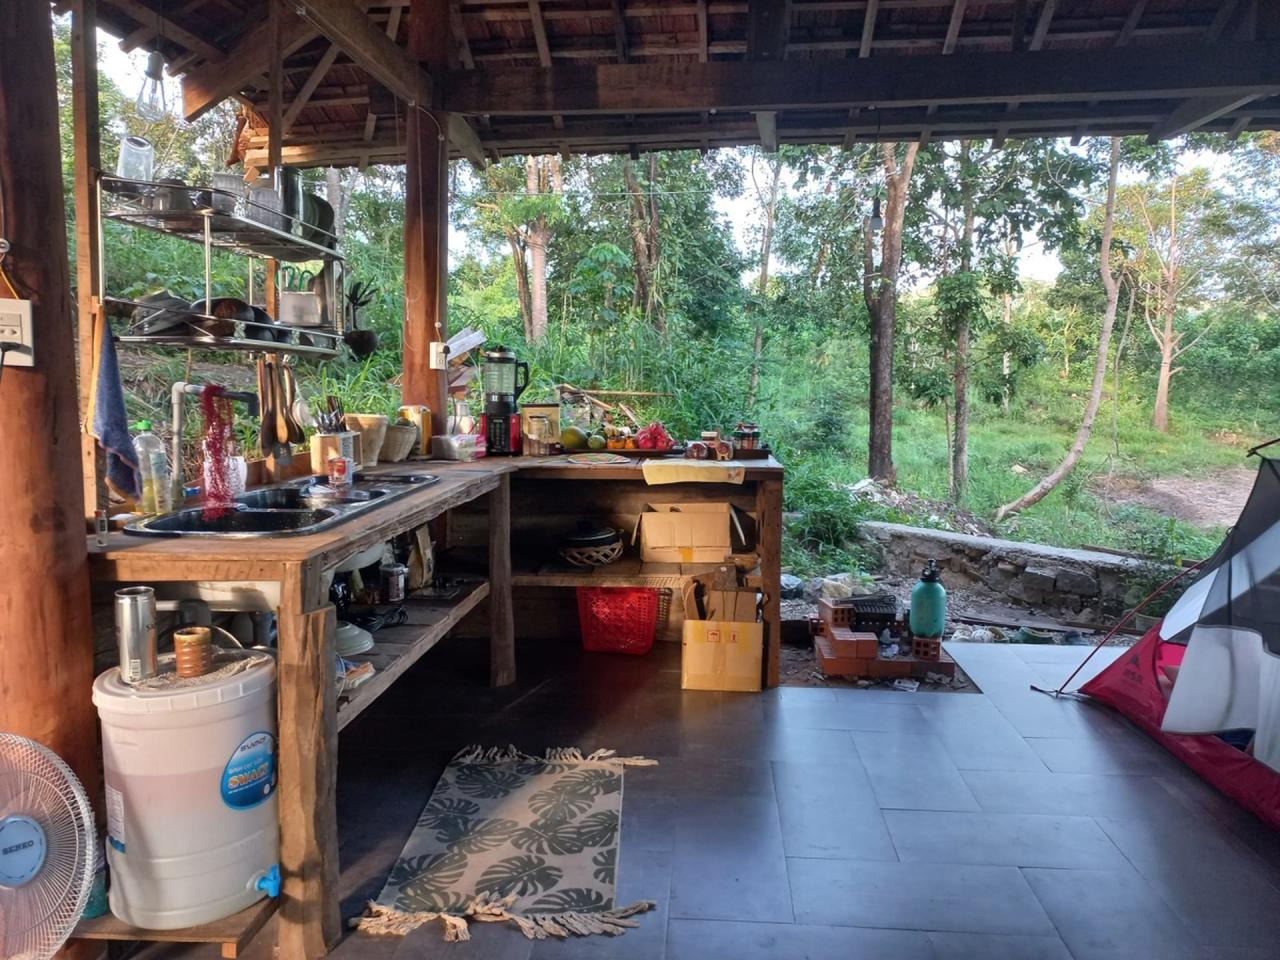 Vợ Việt - chồng Hà Lan bỏ phố về rừng ở nhà gỗ, không dùng bếp điện, tivi - 1